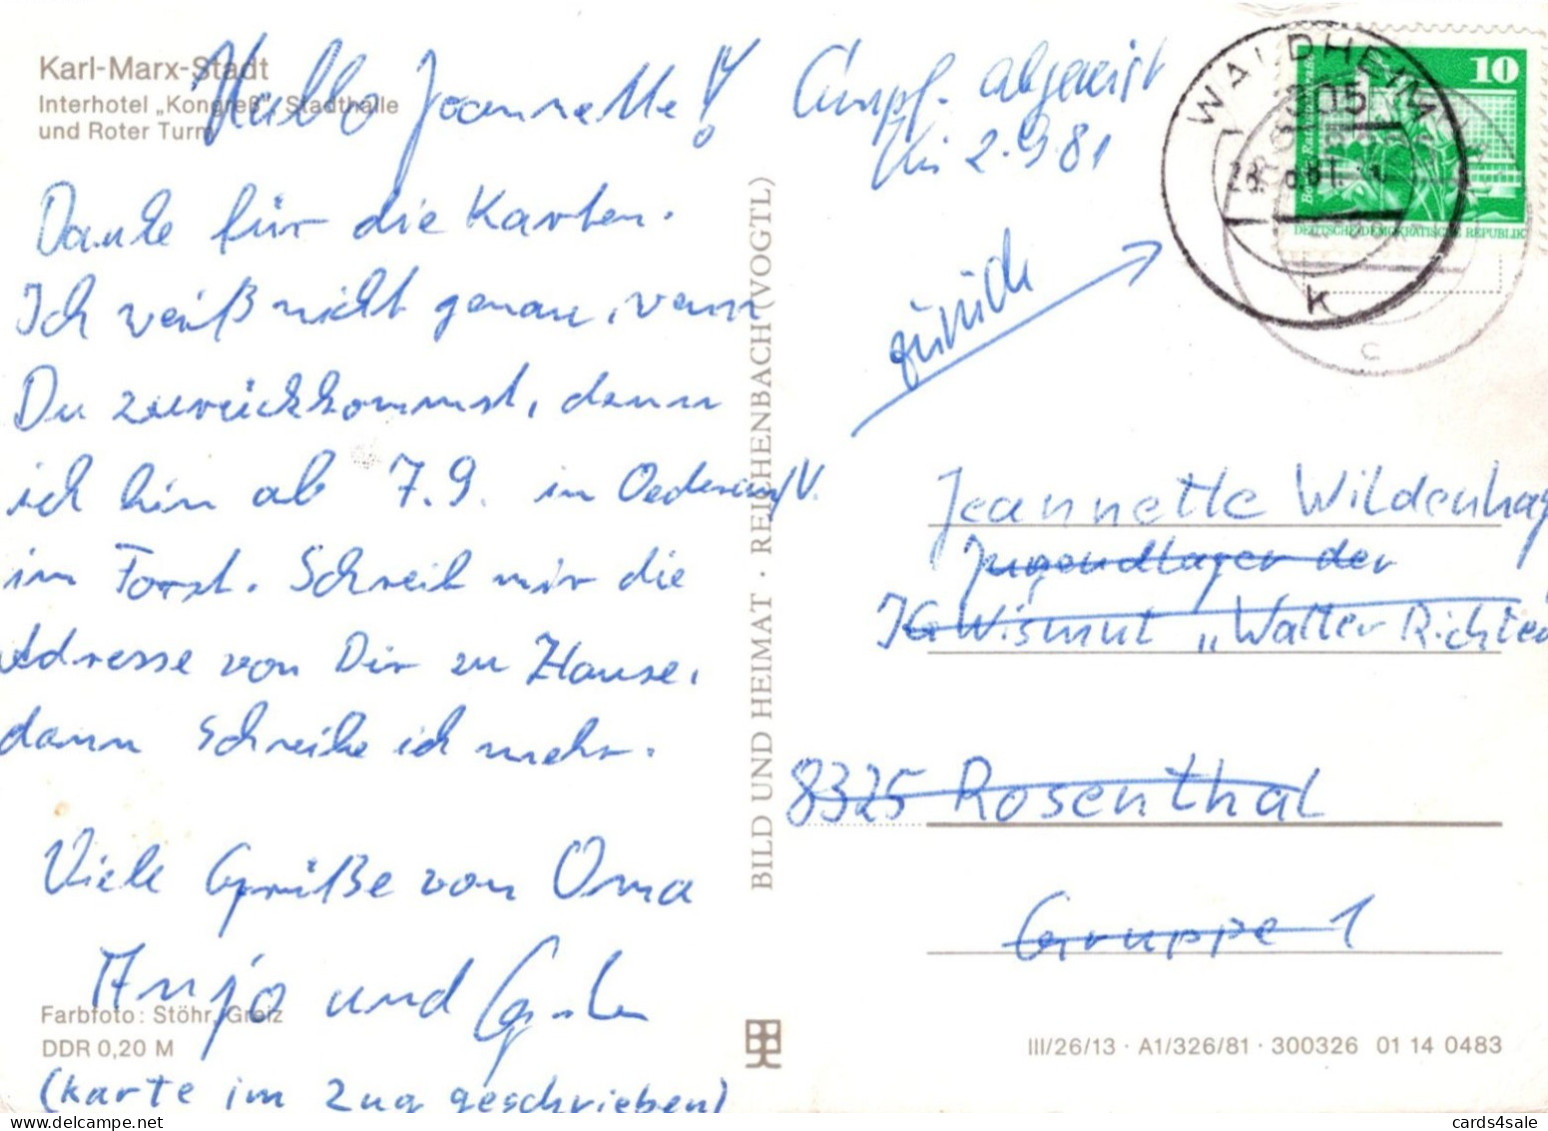 Karl-Marx-Stadt - Interhotel Kongress Stadthalle Und Roter Turm - Chemnitz (Karl-Marx-Stadt 1953-1990)